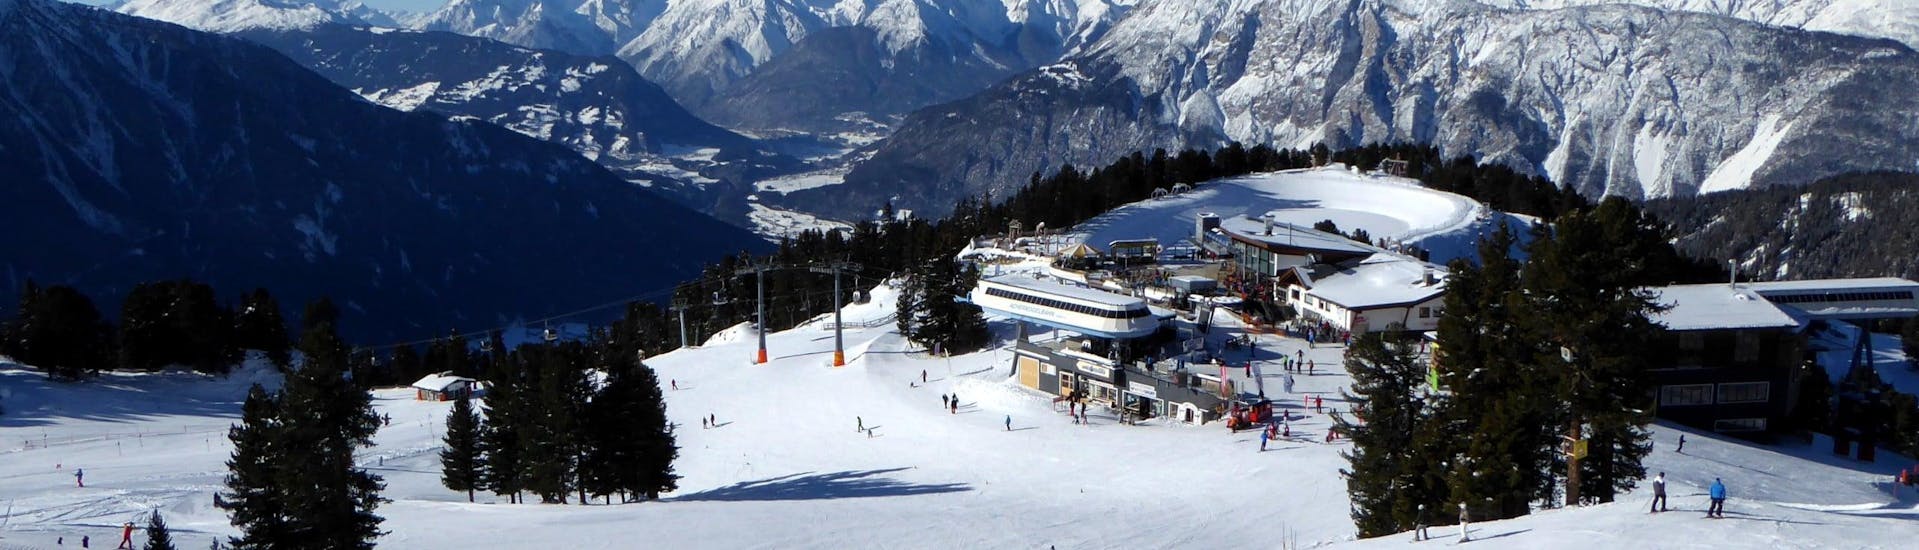 Ausblick auf die sonnige Berglandschaft beim Skifahren lernen mit den Skischulen in Oetz-Hochoetz.